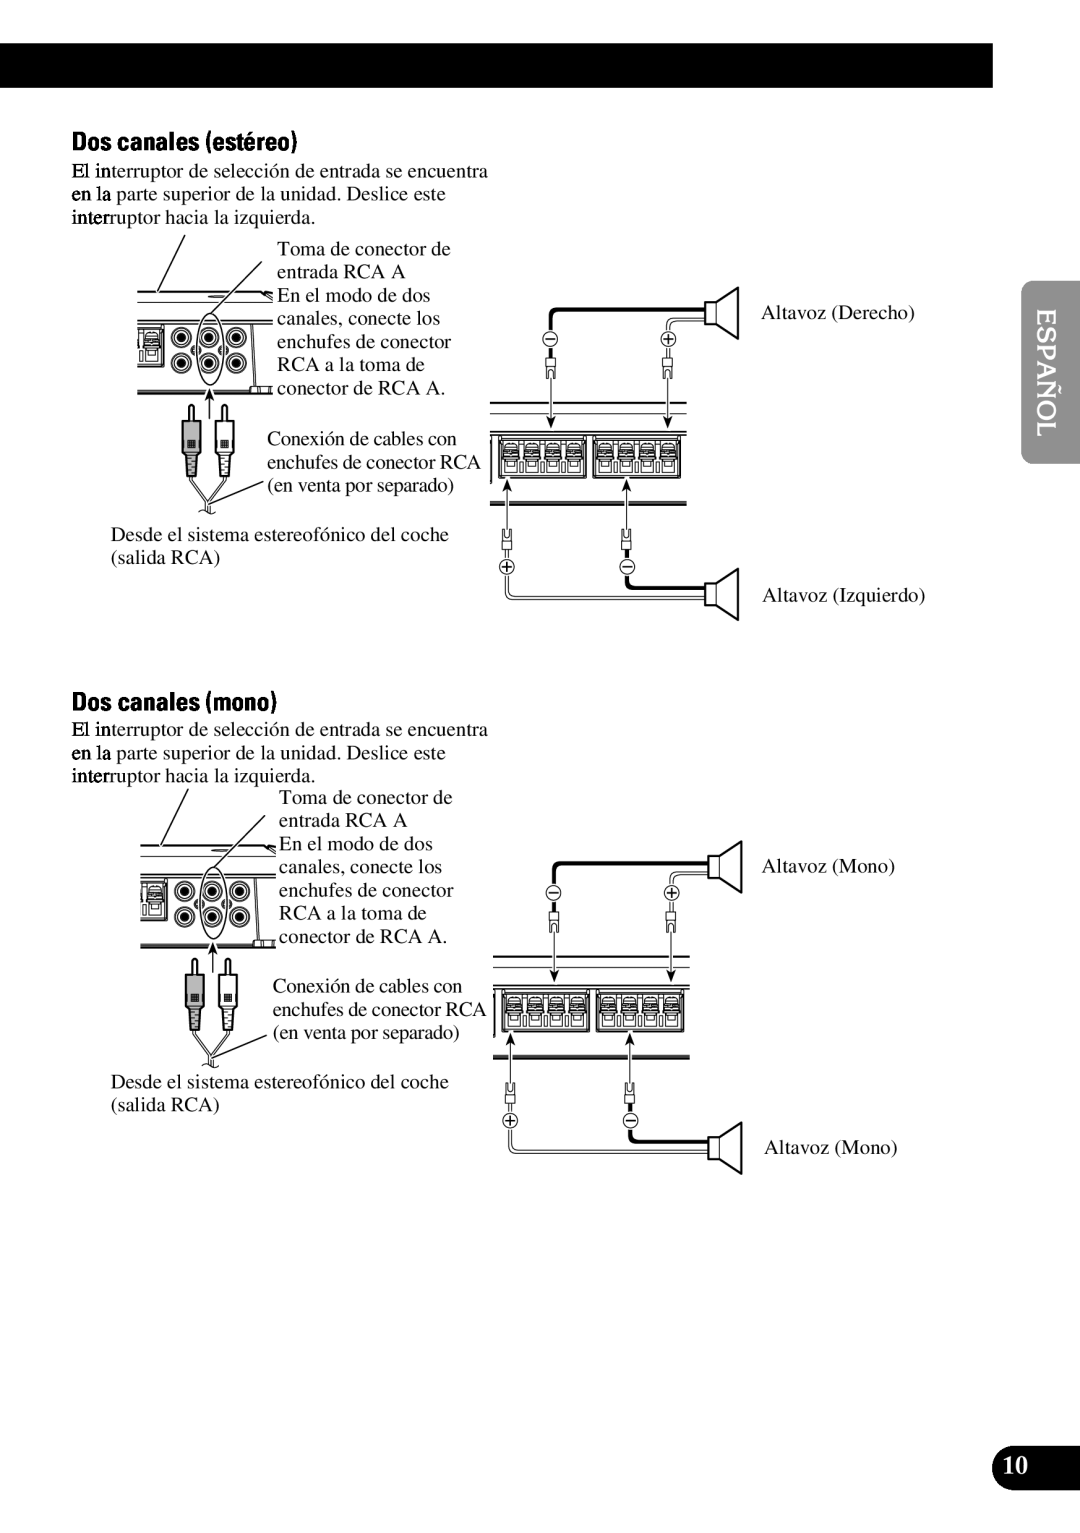 Pioneer PRS-D410 owner manual Dos canales estéreo, Dos canales mono 